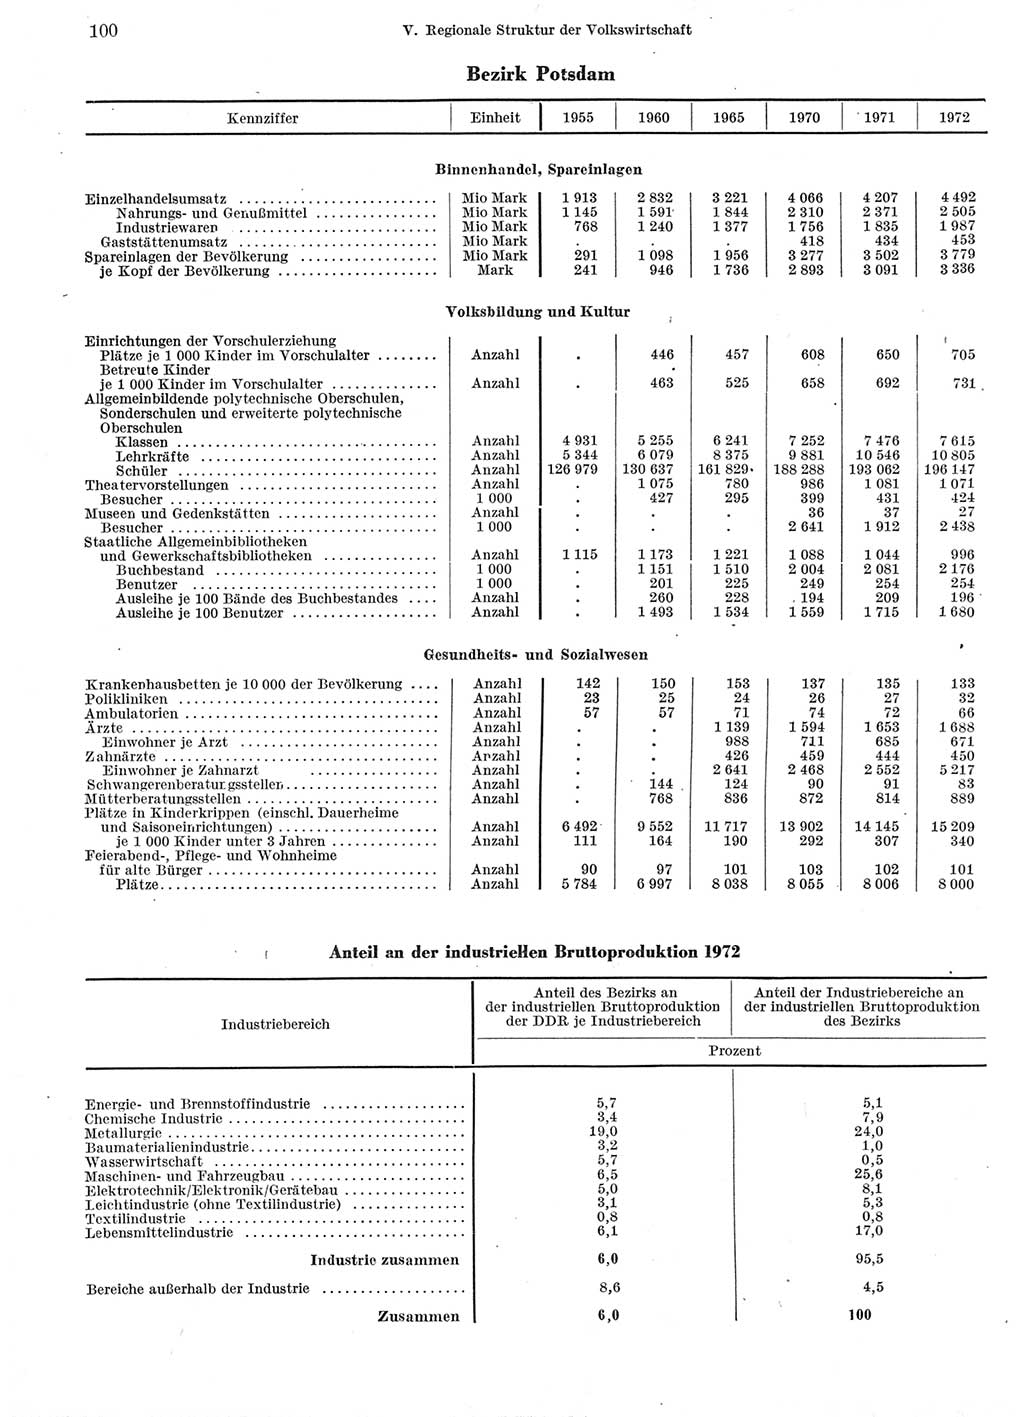 Statistisches Jahrbuch der Deutschen Demokratischen Republik (DDR) 1973, Seite 100 (Stat. Jb. DDR 1973, S. 100)